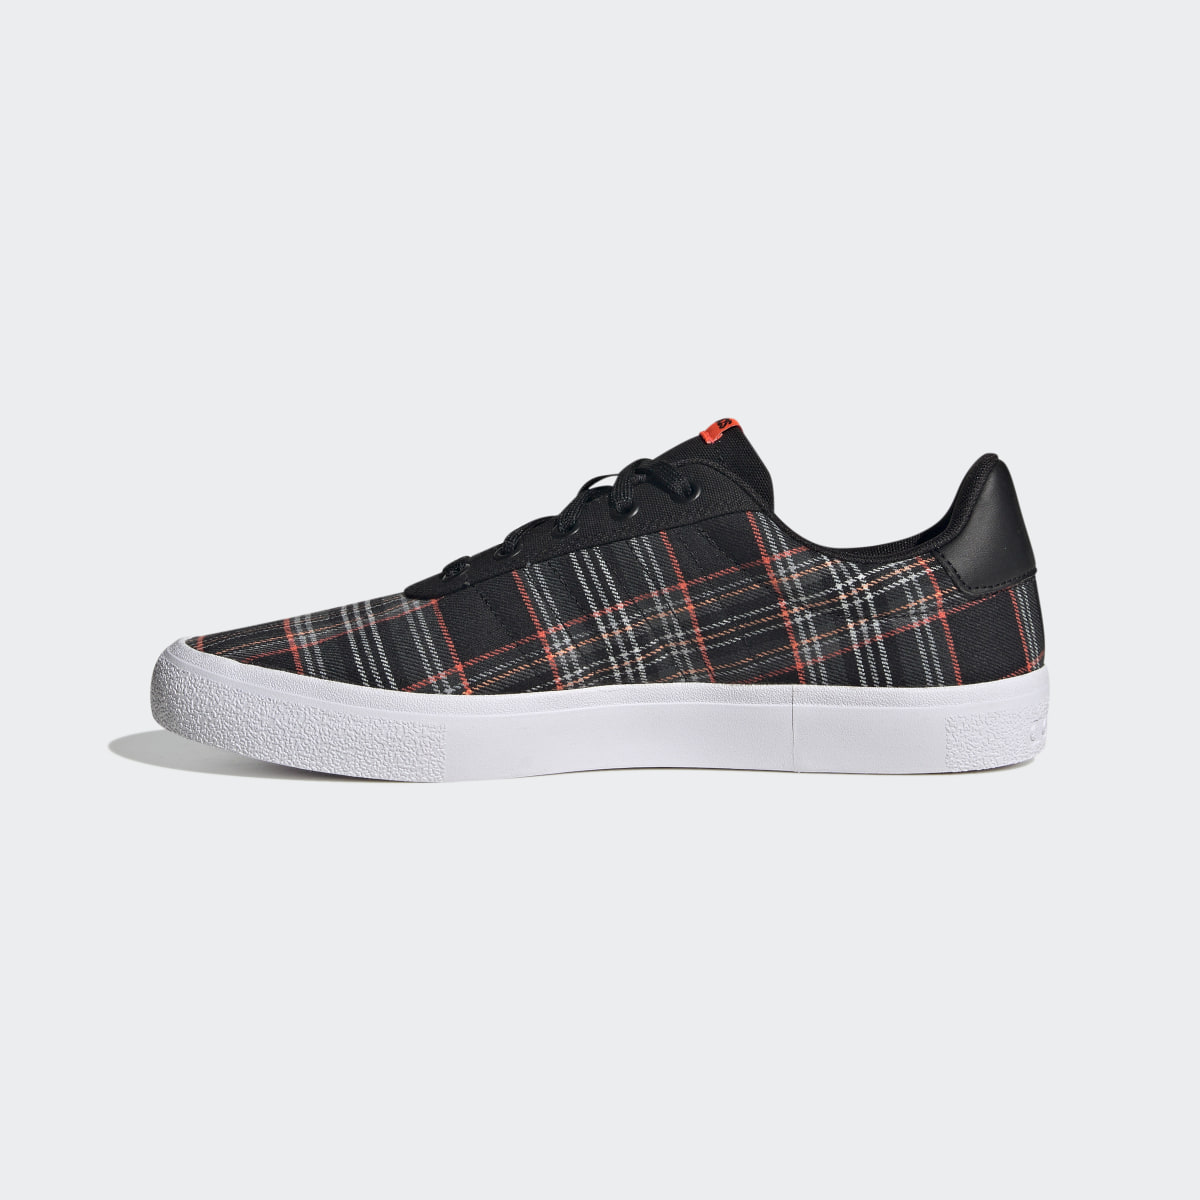 Adidas Vulc Raid3r Lifestyle Skateboarding 3-Stripes Branding Shoes. 7